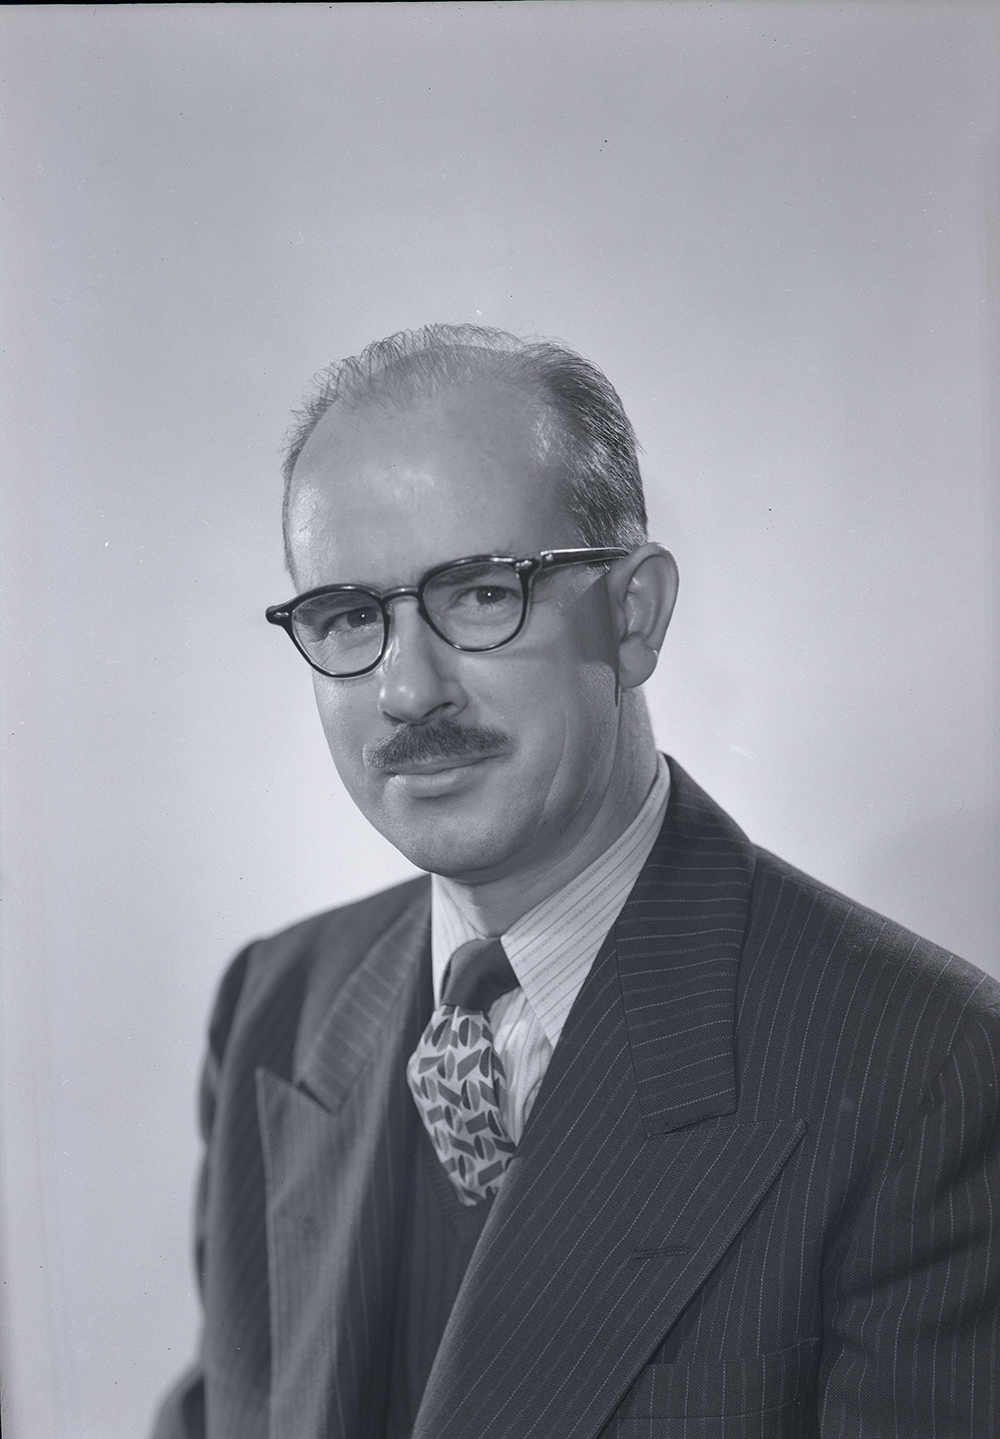 Samuel Musgrave portrait, 1952